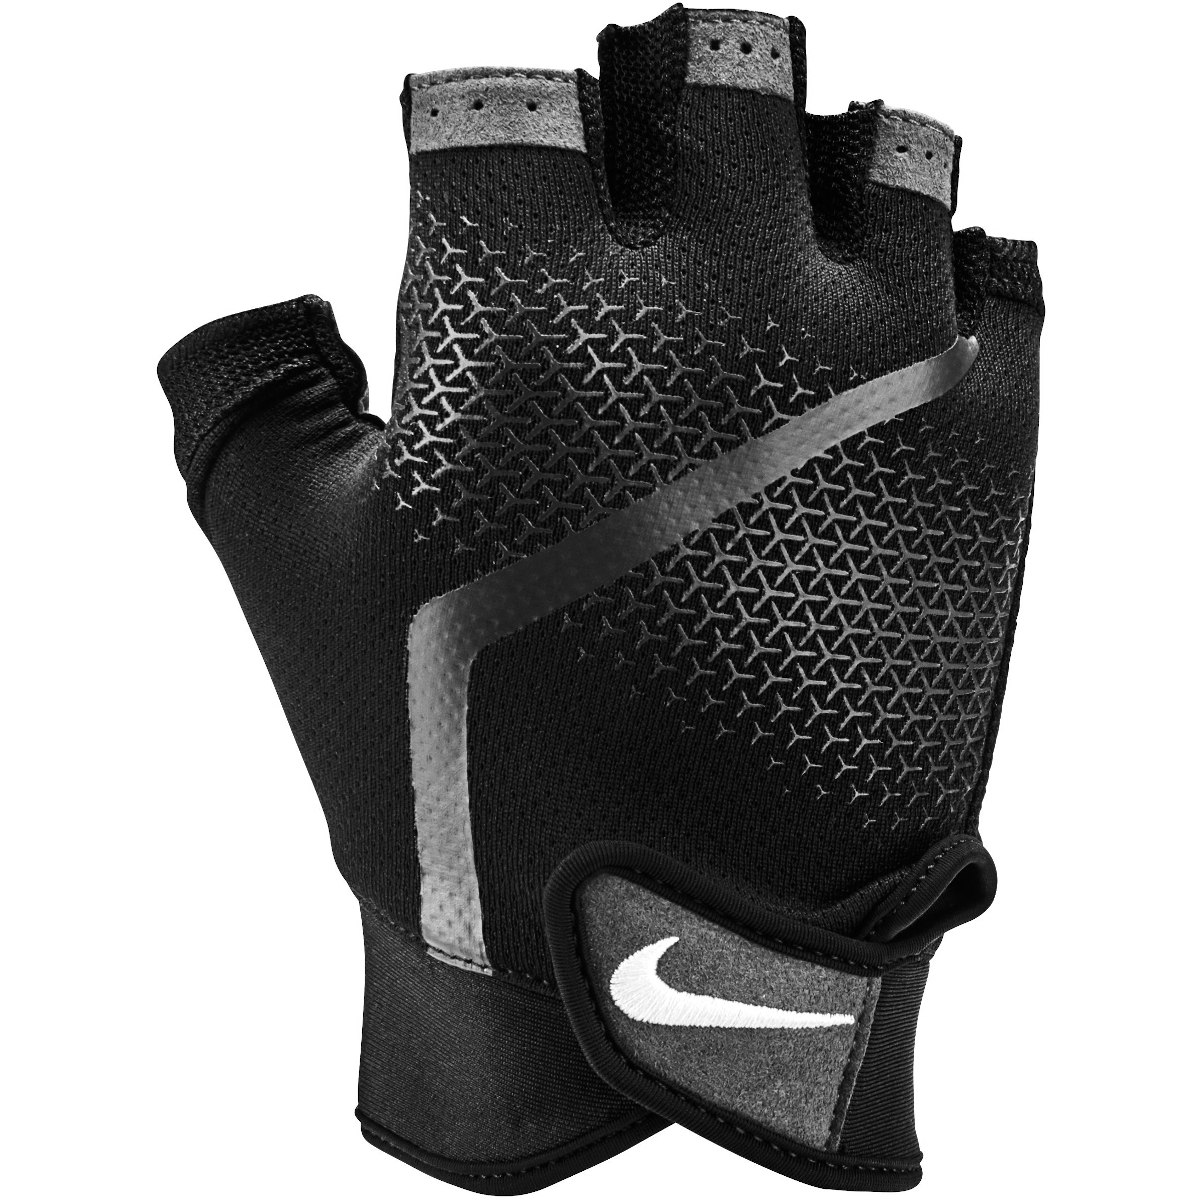 Bild von Nike Herren Extreme Fitness-Handschuhe - black/anthracite/white 945